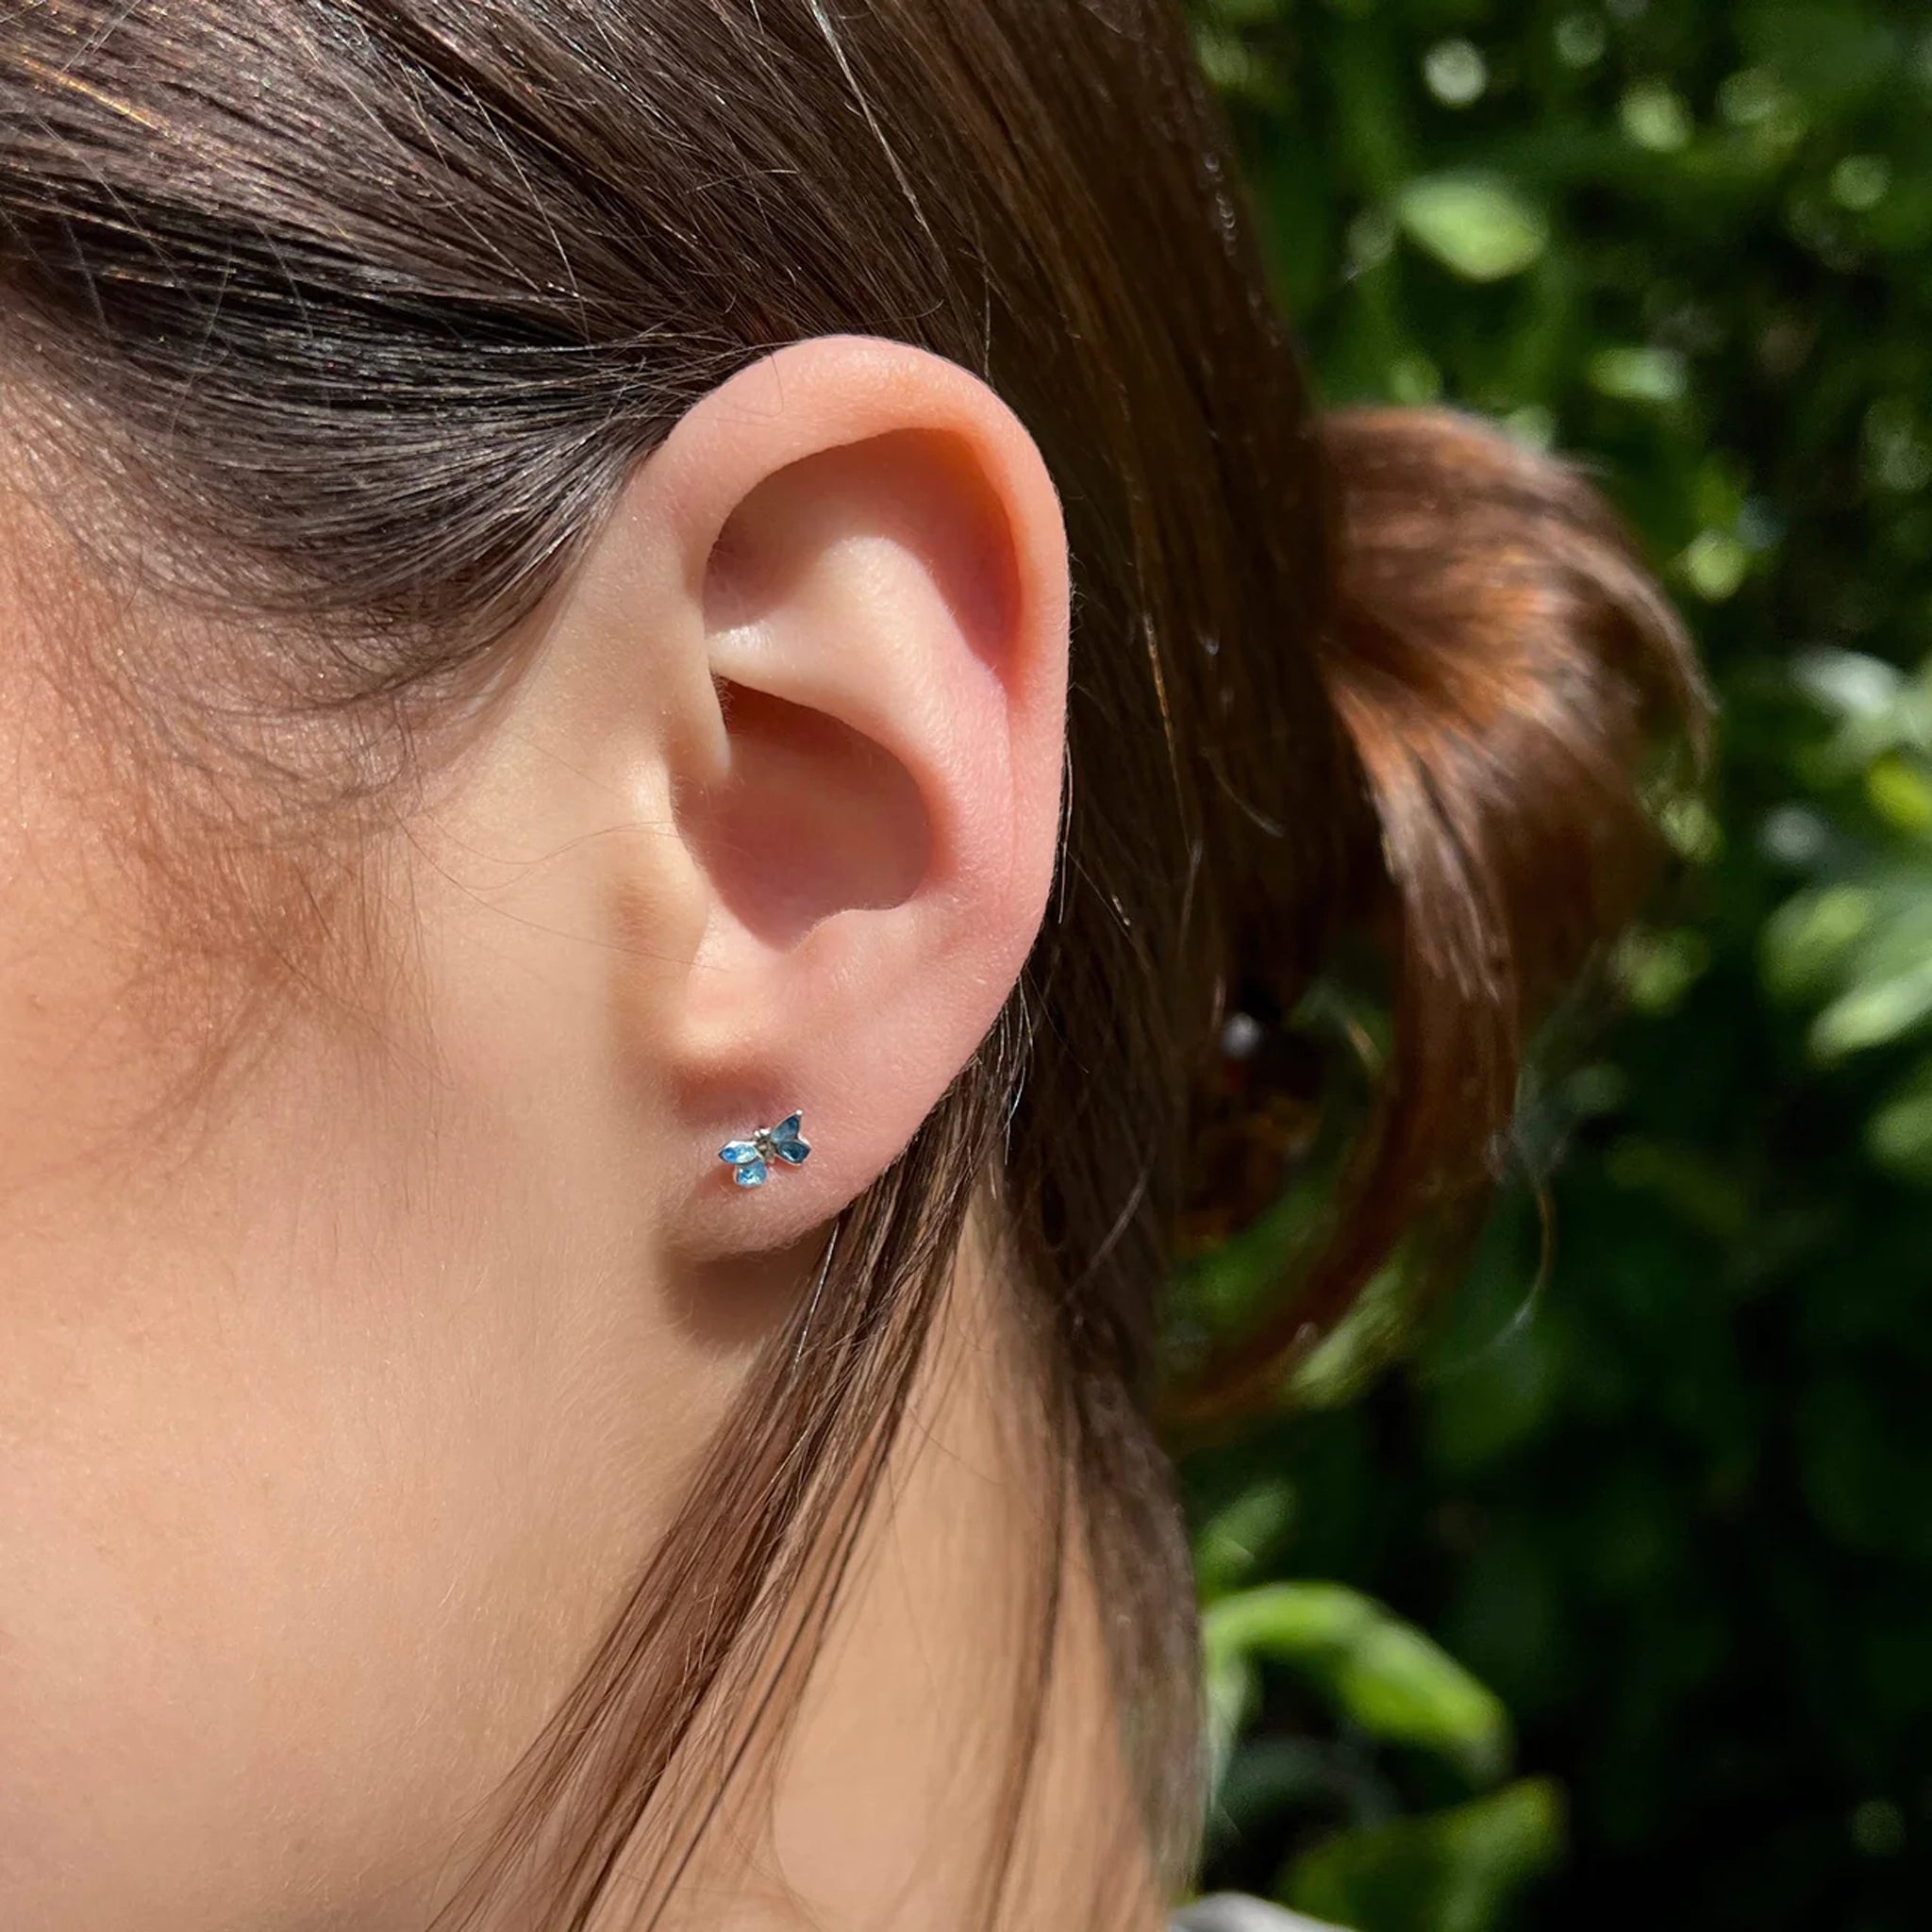 Model wearing a pair of tiny blue enamel butterfly stud earrings in polished silver